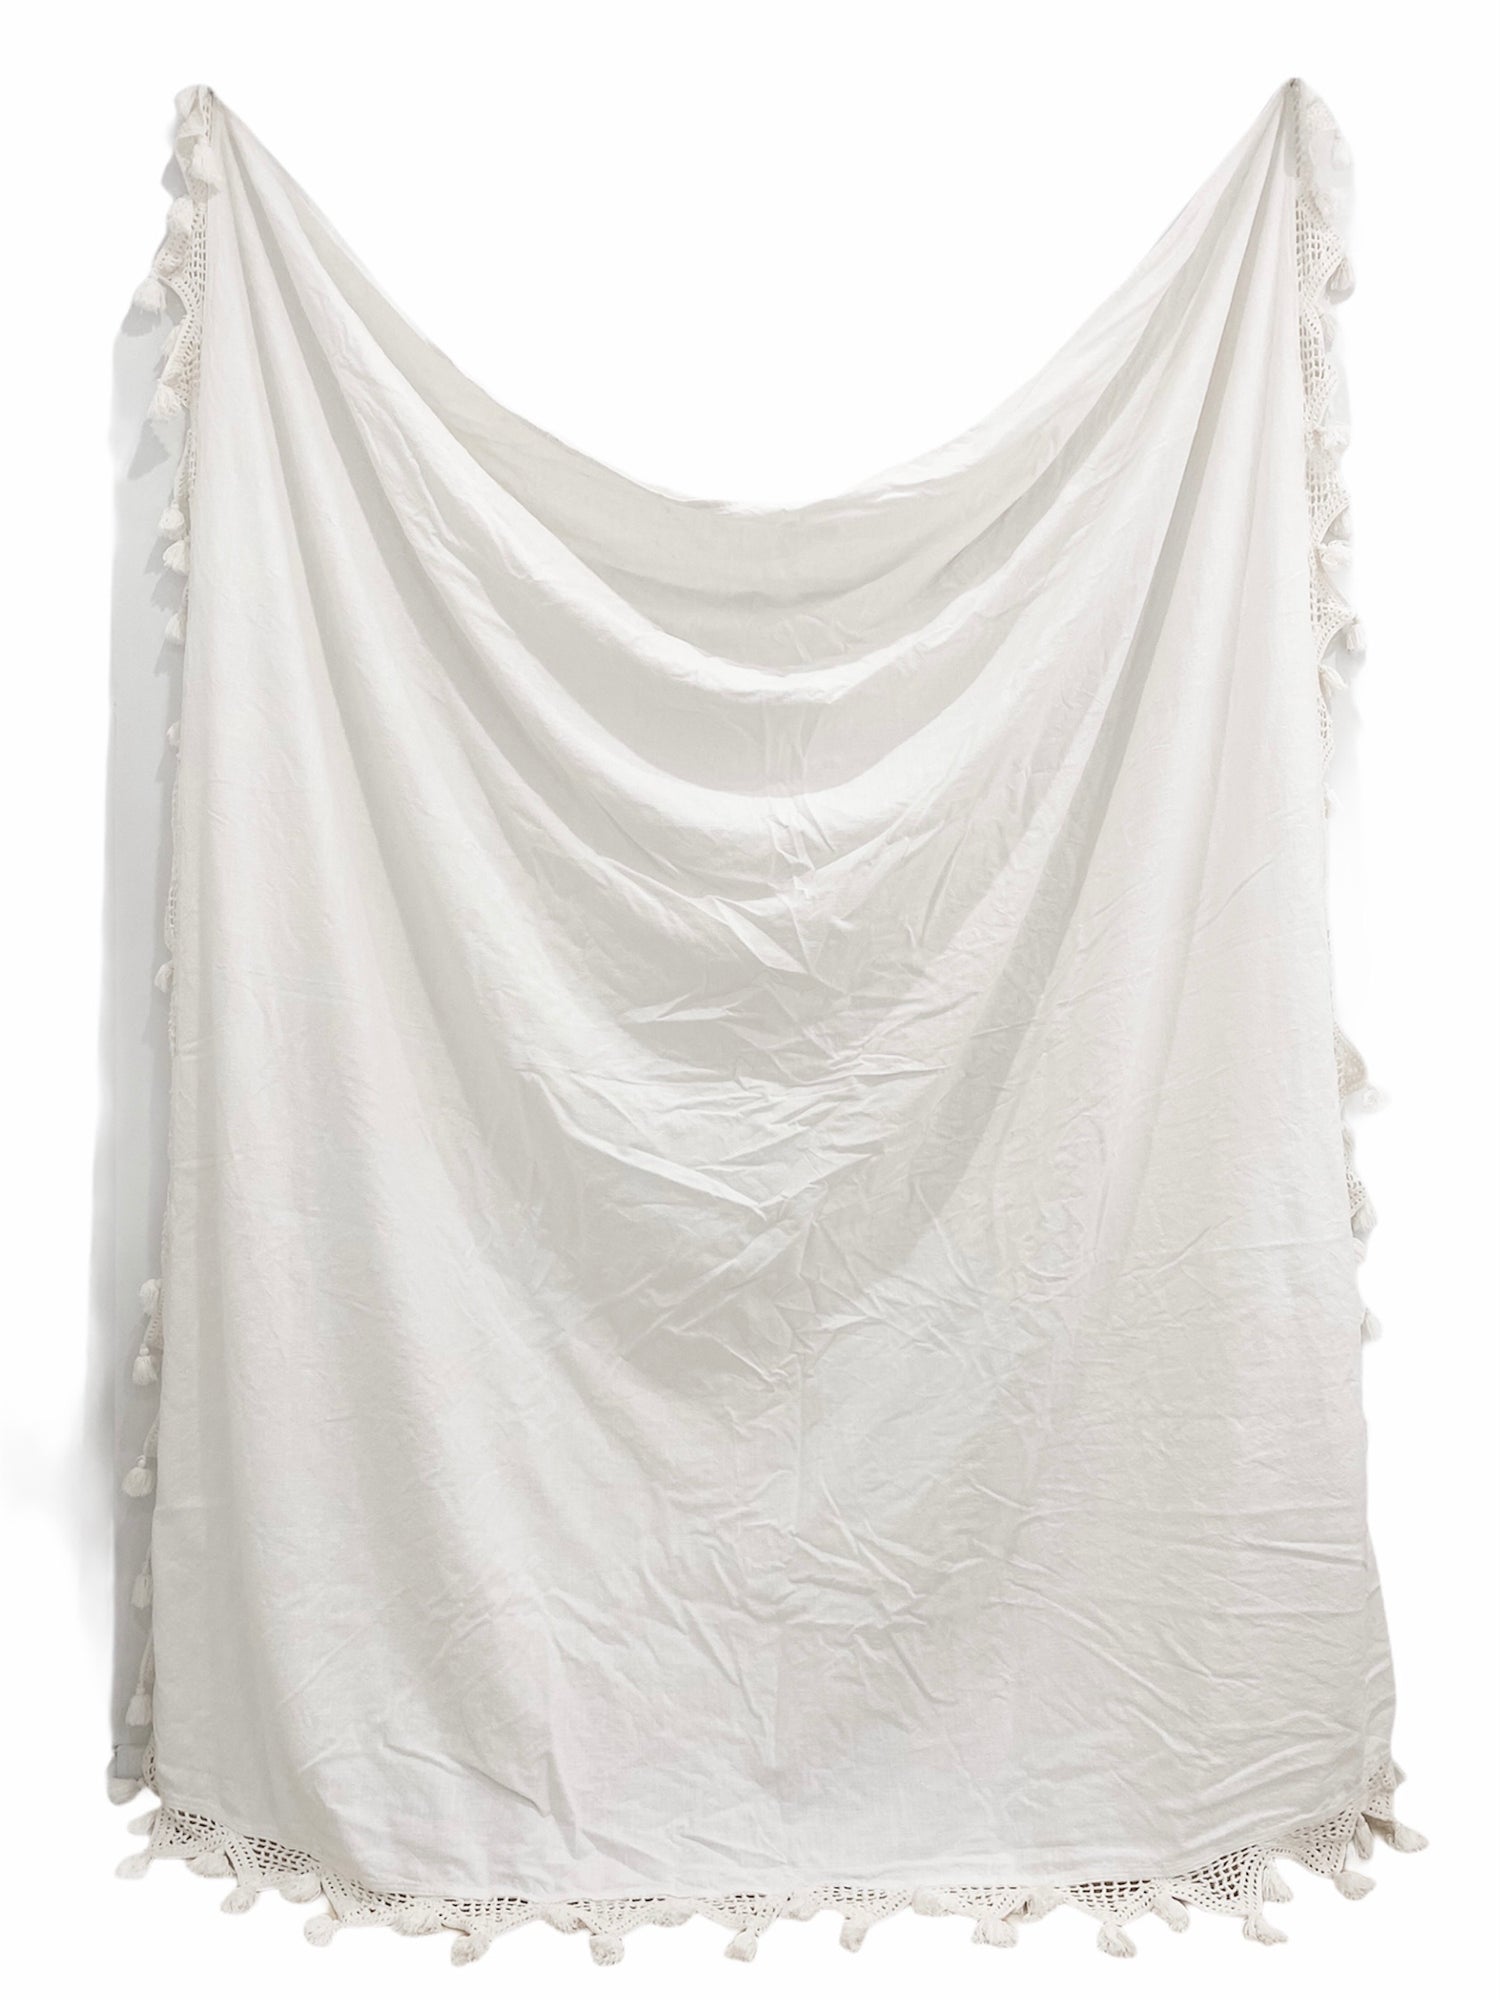 White 100% cotton Gypsy Throw Blanket